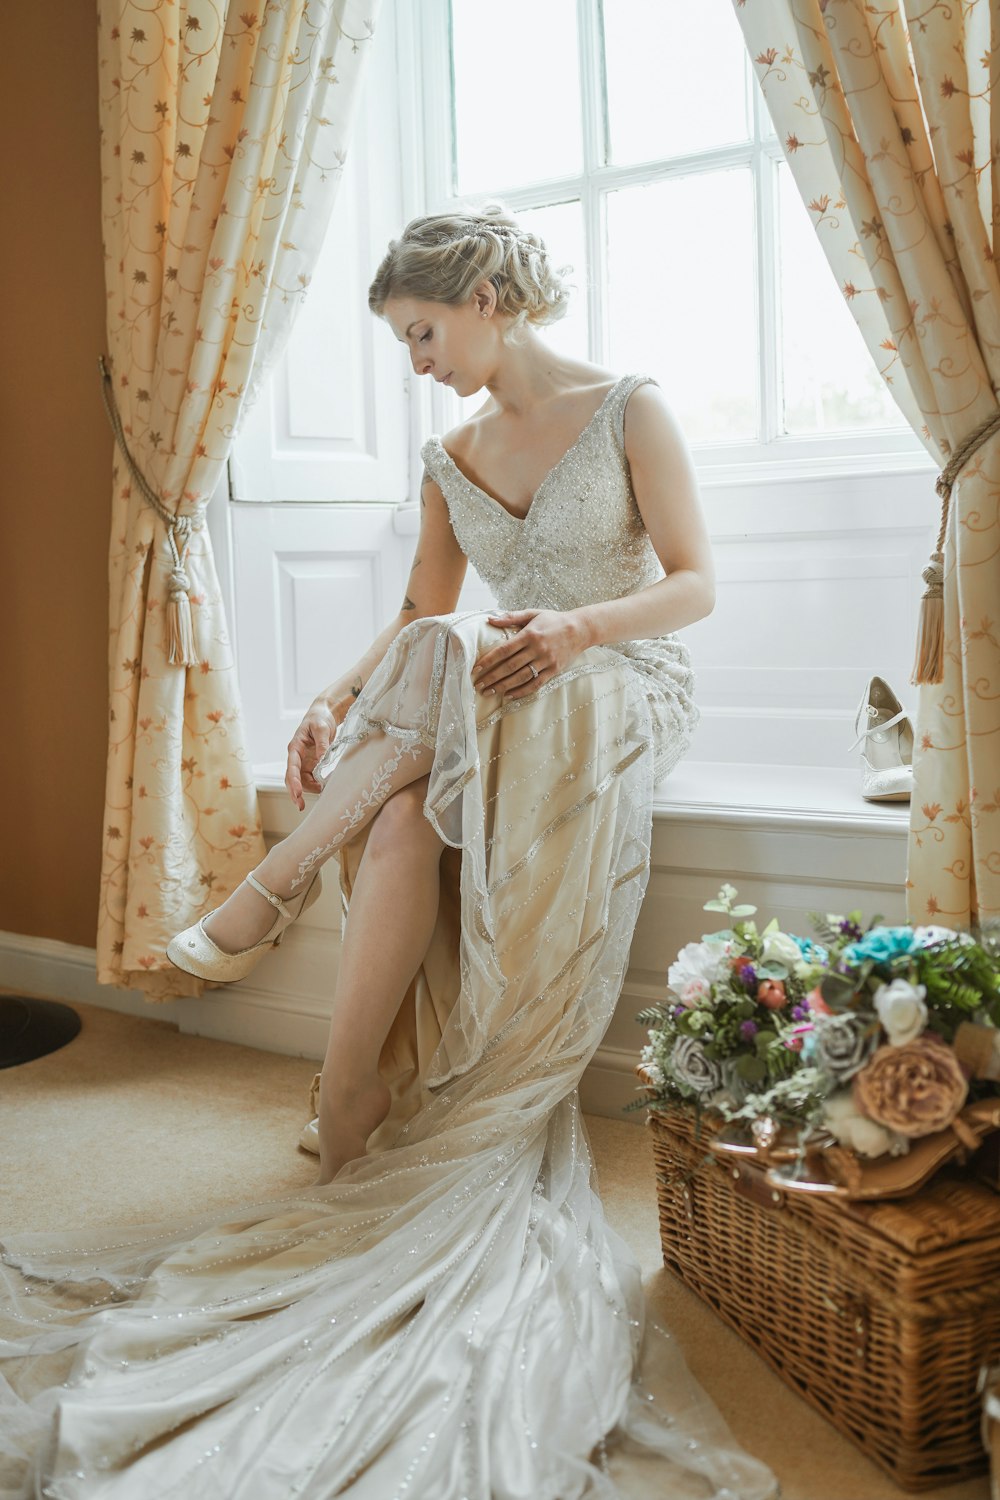 a woman in a wedding dress sitting on a window sill